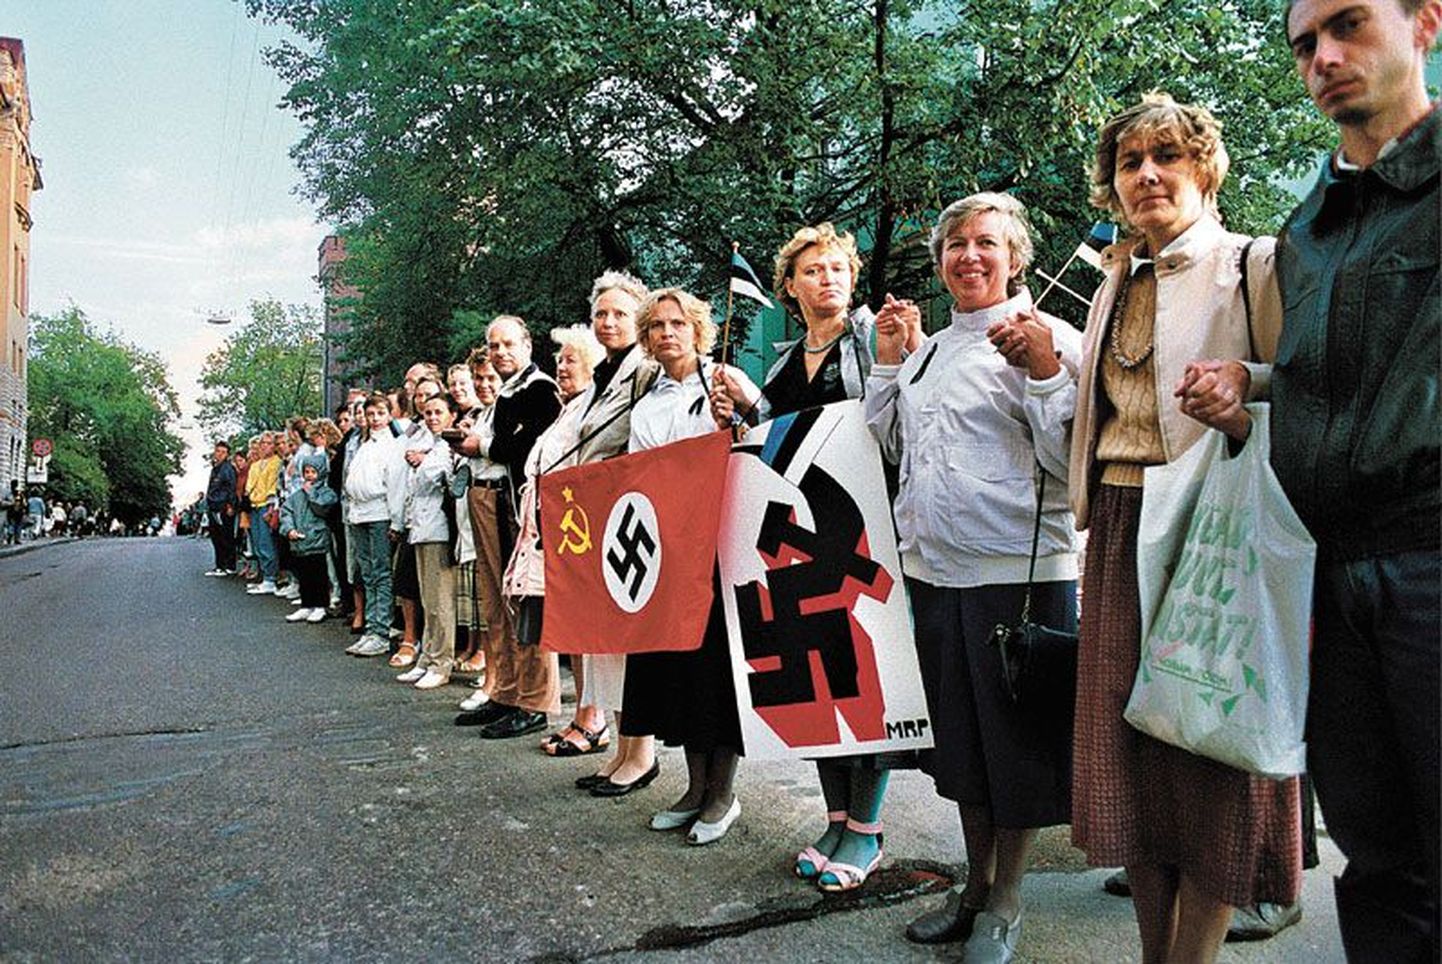 23. augustil 1989 osales Balti ketis ligi 2 miljonit inimest kolmest Balti riigist.  Leedu Sąjūdise, Läti Tautas Fronte ja Eesti Rahvarinde ning samal aastal kolme rahvarinde esindajate poolt moodustatud Balti Nõukogu algatusel
sündinud 600 kilomeetri pikkune inimkett kogunes Molotovi-Ribbentropi pakti    sõlmimise 50. aastapäeval.